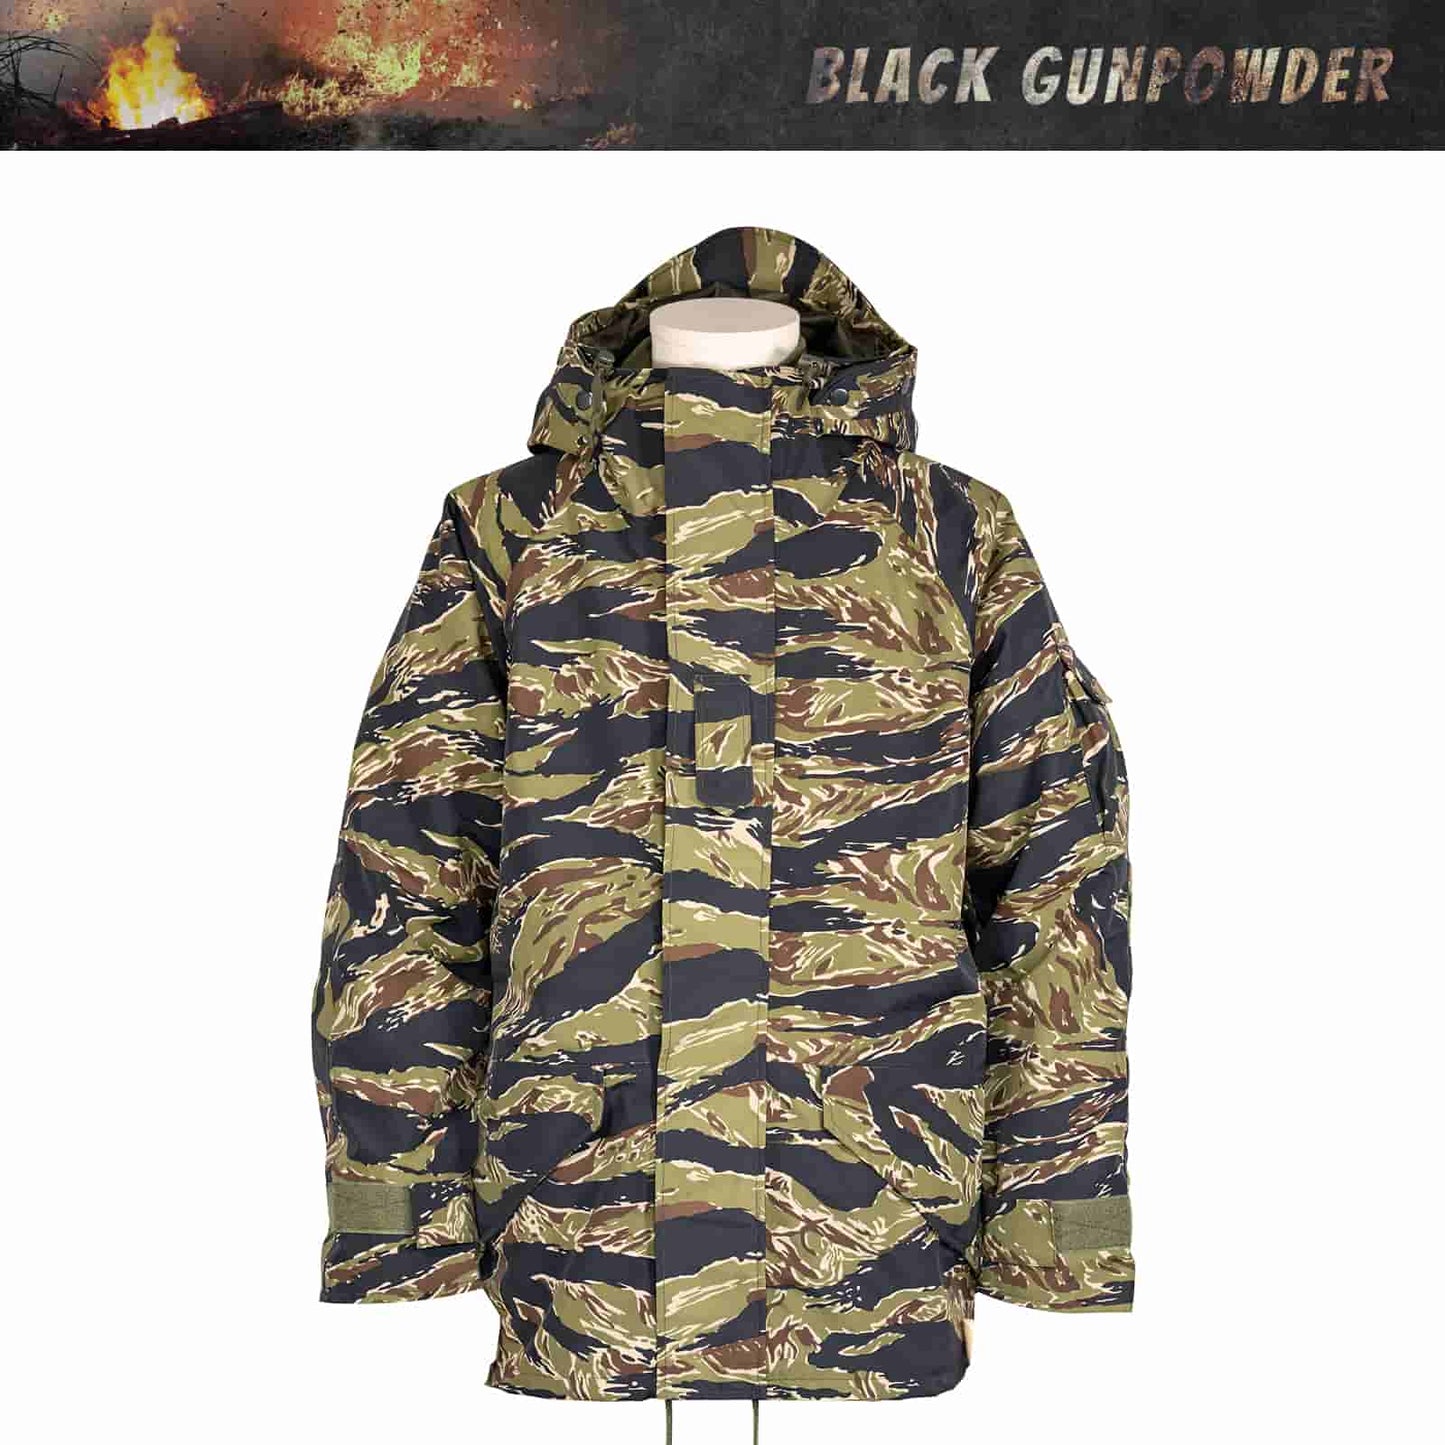 Black Gunpowder Tiger Stripe Hooded Windproof Field Jacket With Detachable Warm Fleece Lining